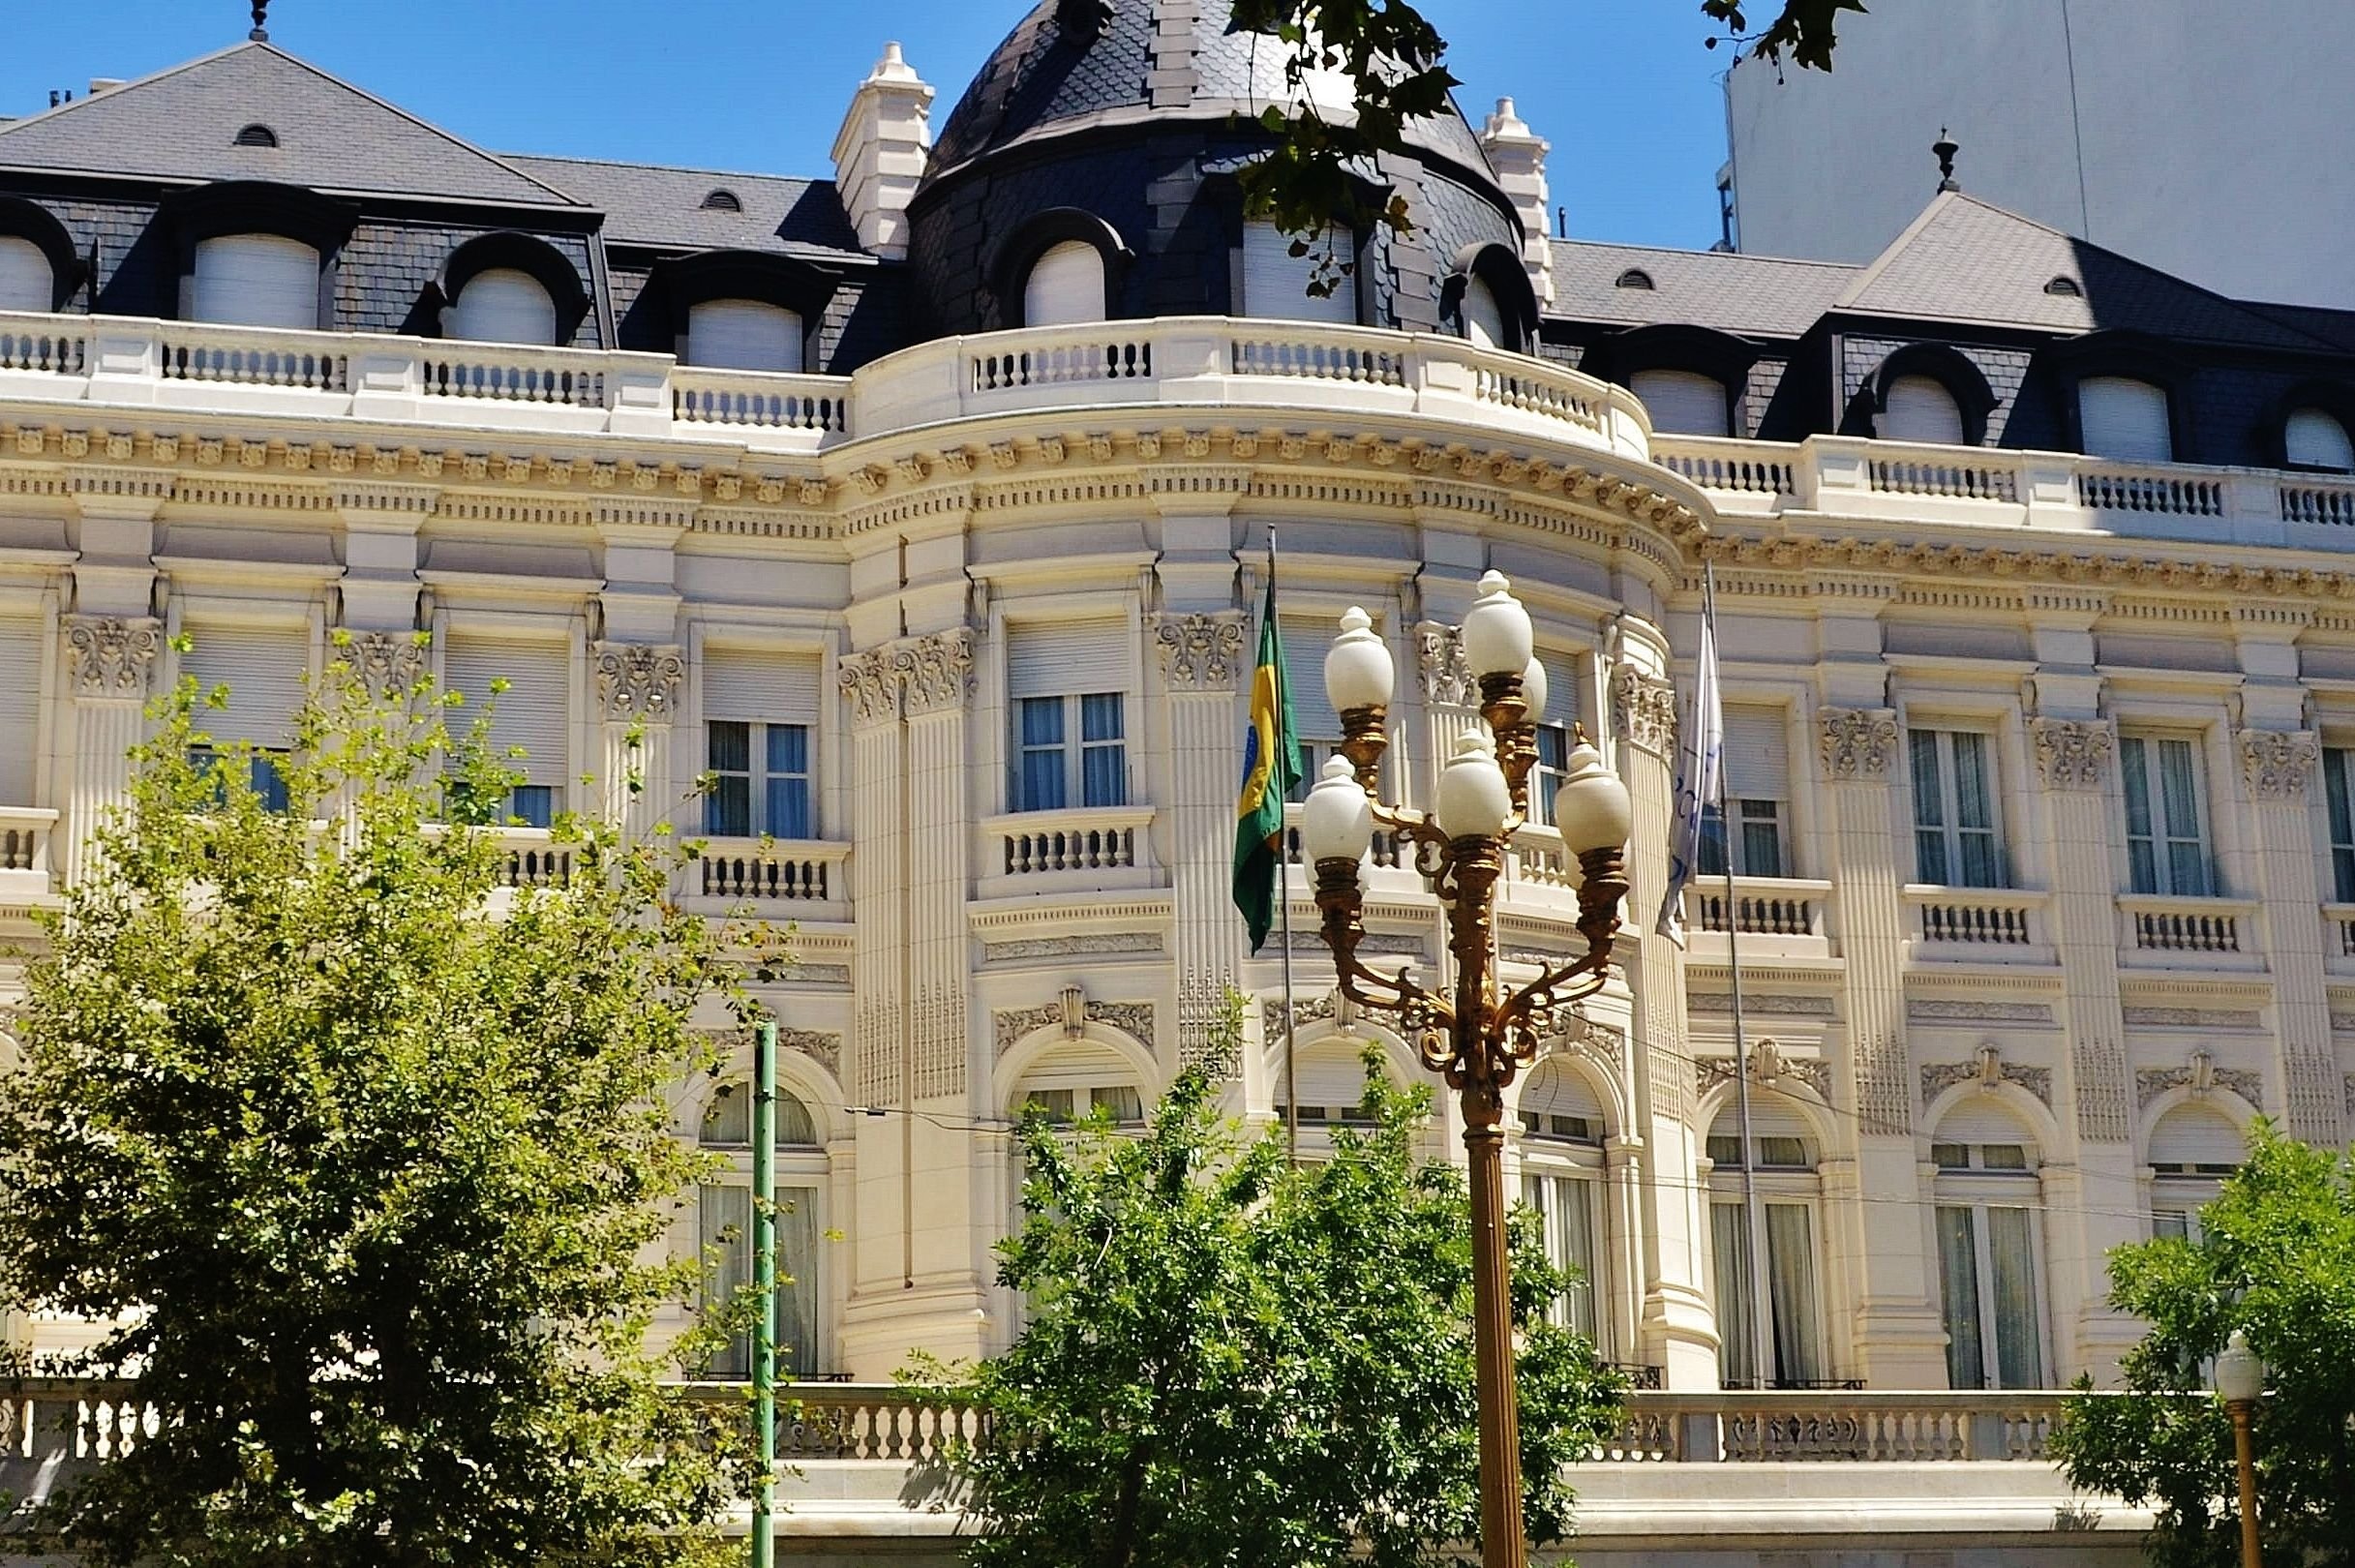 Embaixada do Brasil em Belgrado